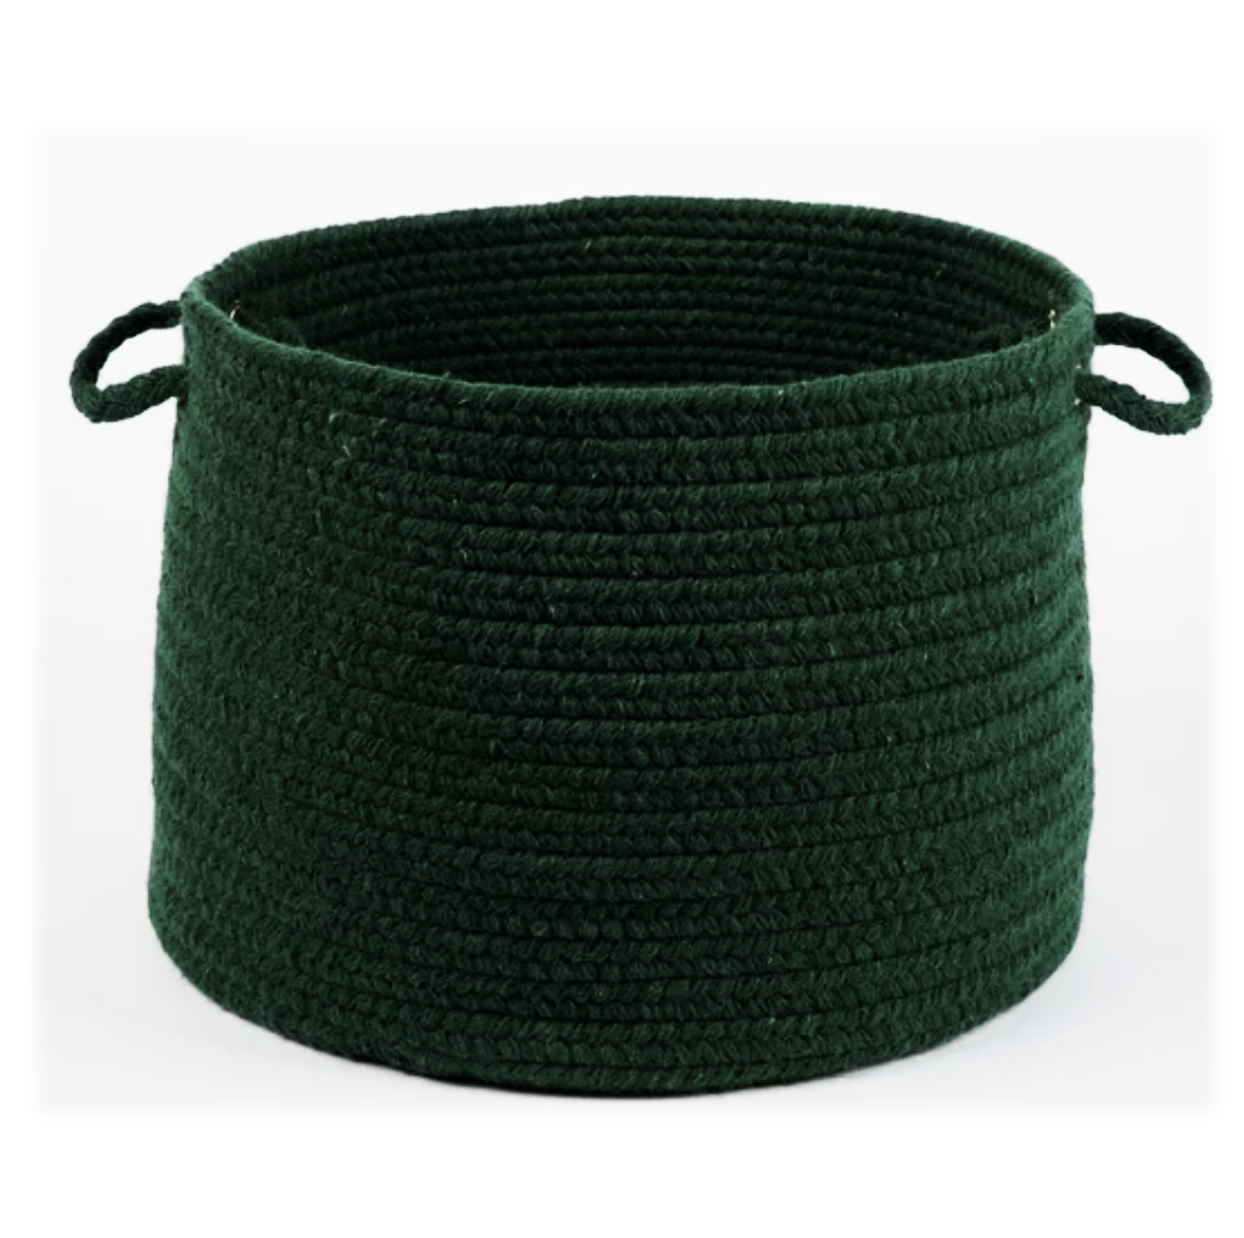 Dark Green Basket with handles